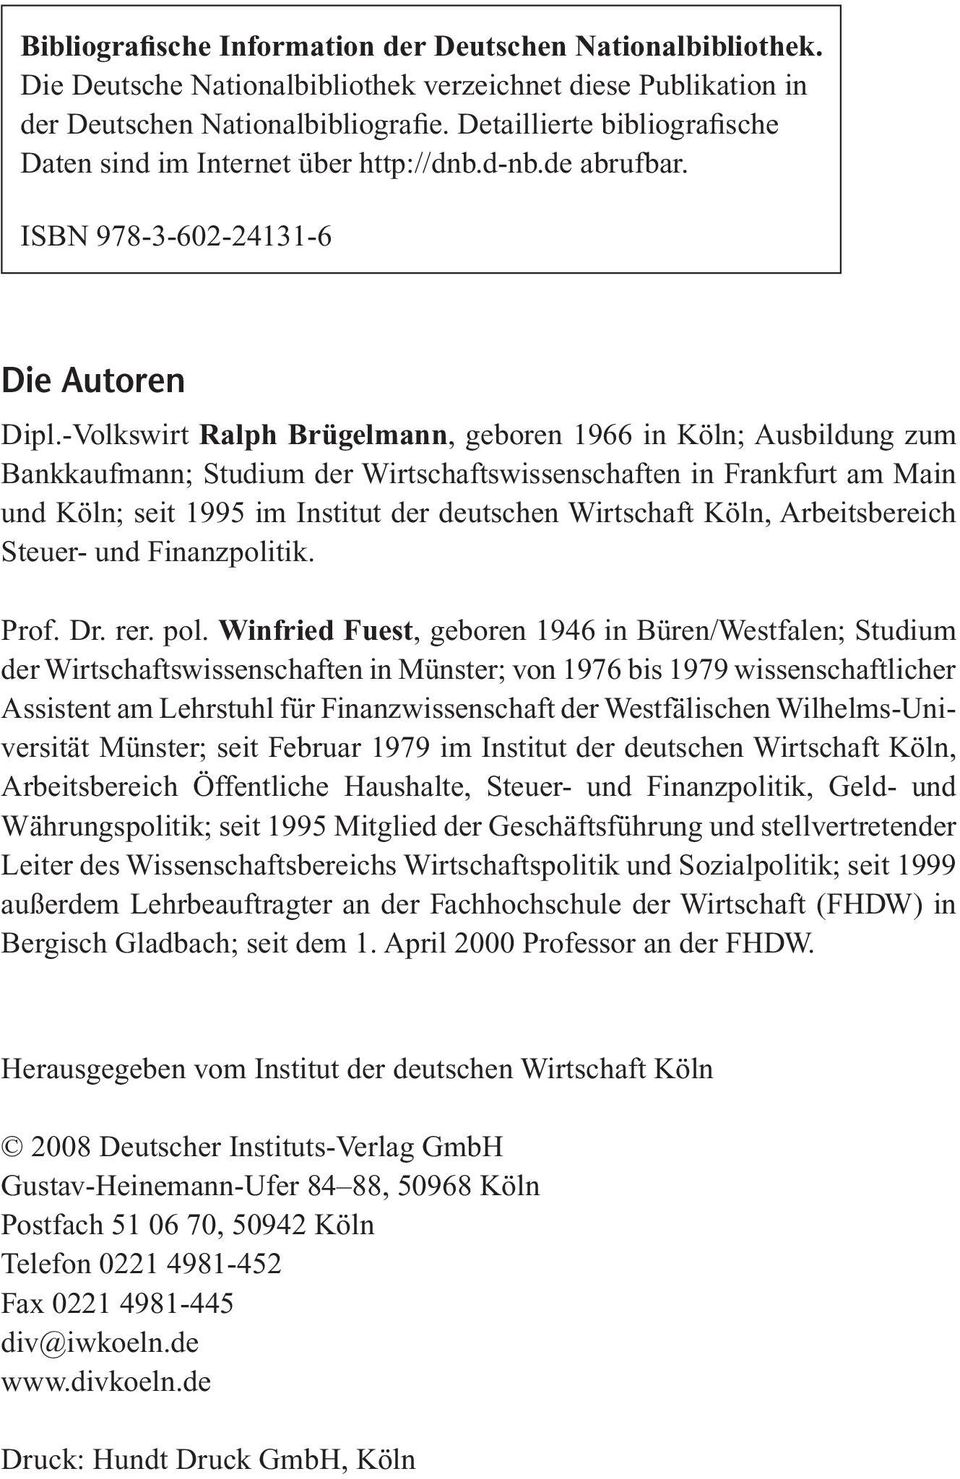 -Volkswirt Ralph Brügelmann, geboren 1966 in Köln; Ausbildung zum Bankkaufmann; Studium der Wirtschaftswissenschaften in Frankfurt am Main und Köln; seit 1995 im Institut der deutschen Wirtschaft